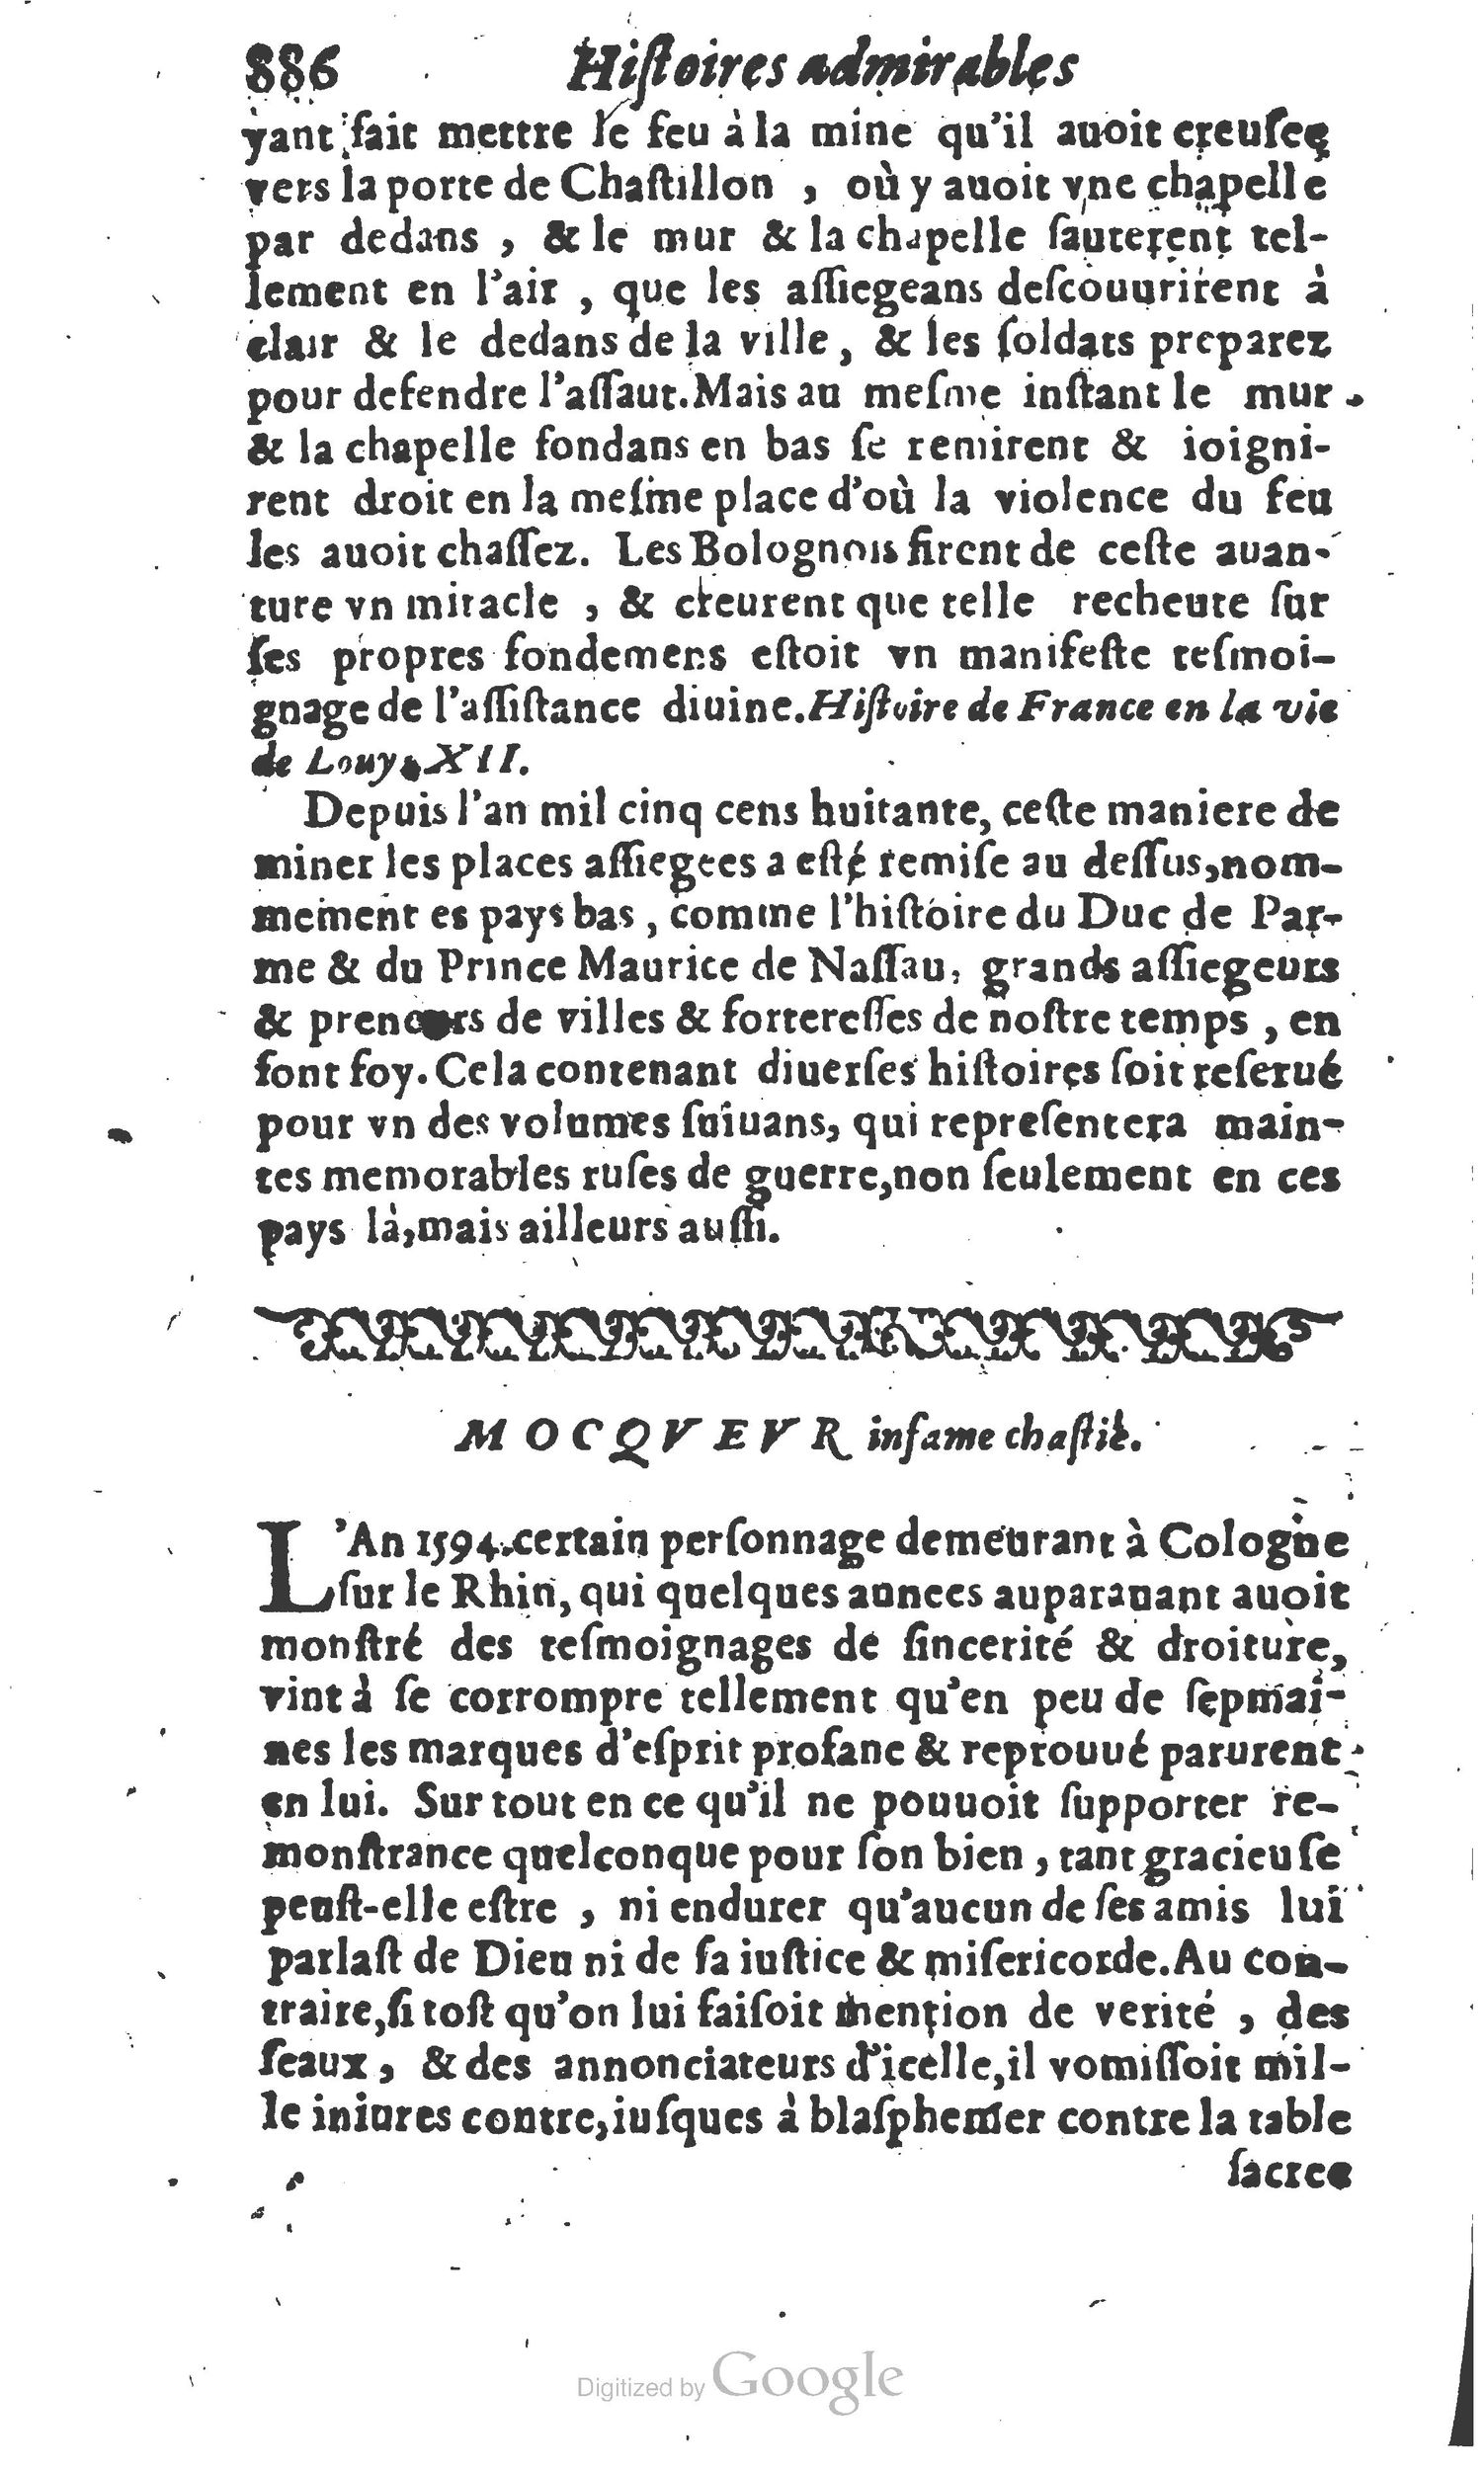 1610 Trésor d’histoires admirables et mémorables de nostre temps Marceau Princeton_Page_0907.jpg